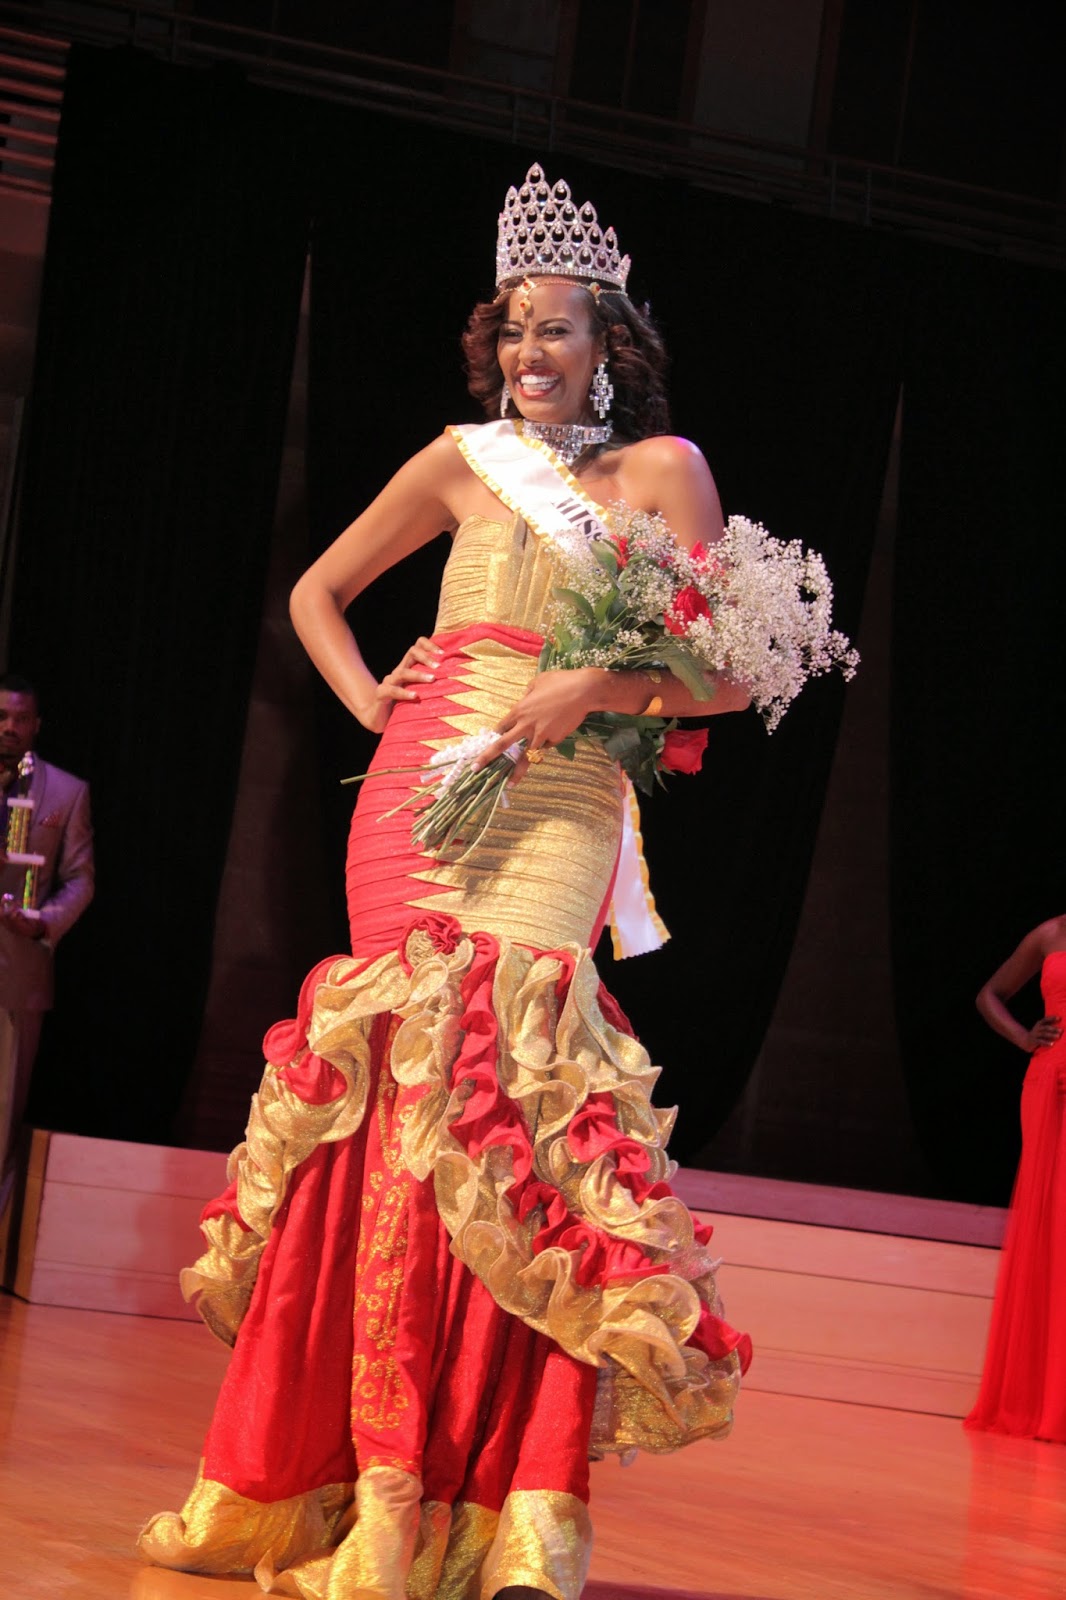 Miss Ethiopia